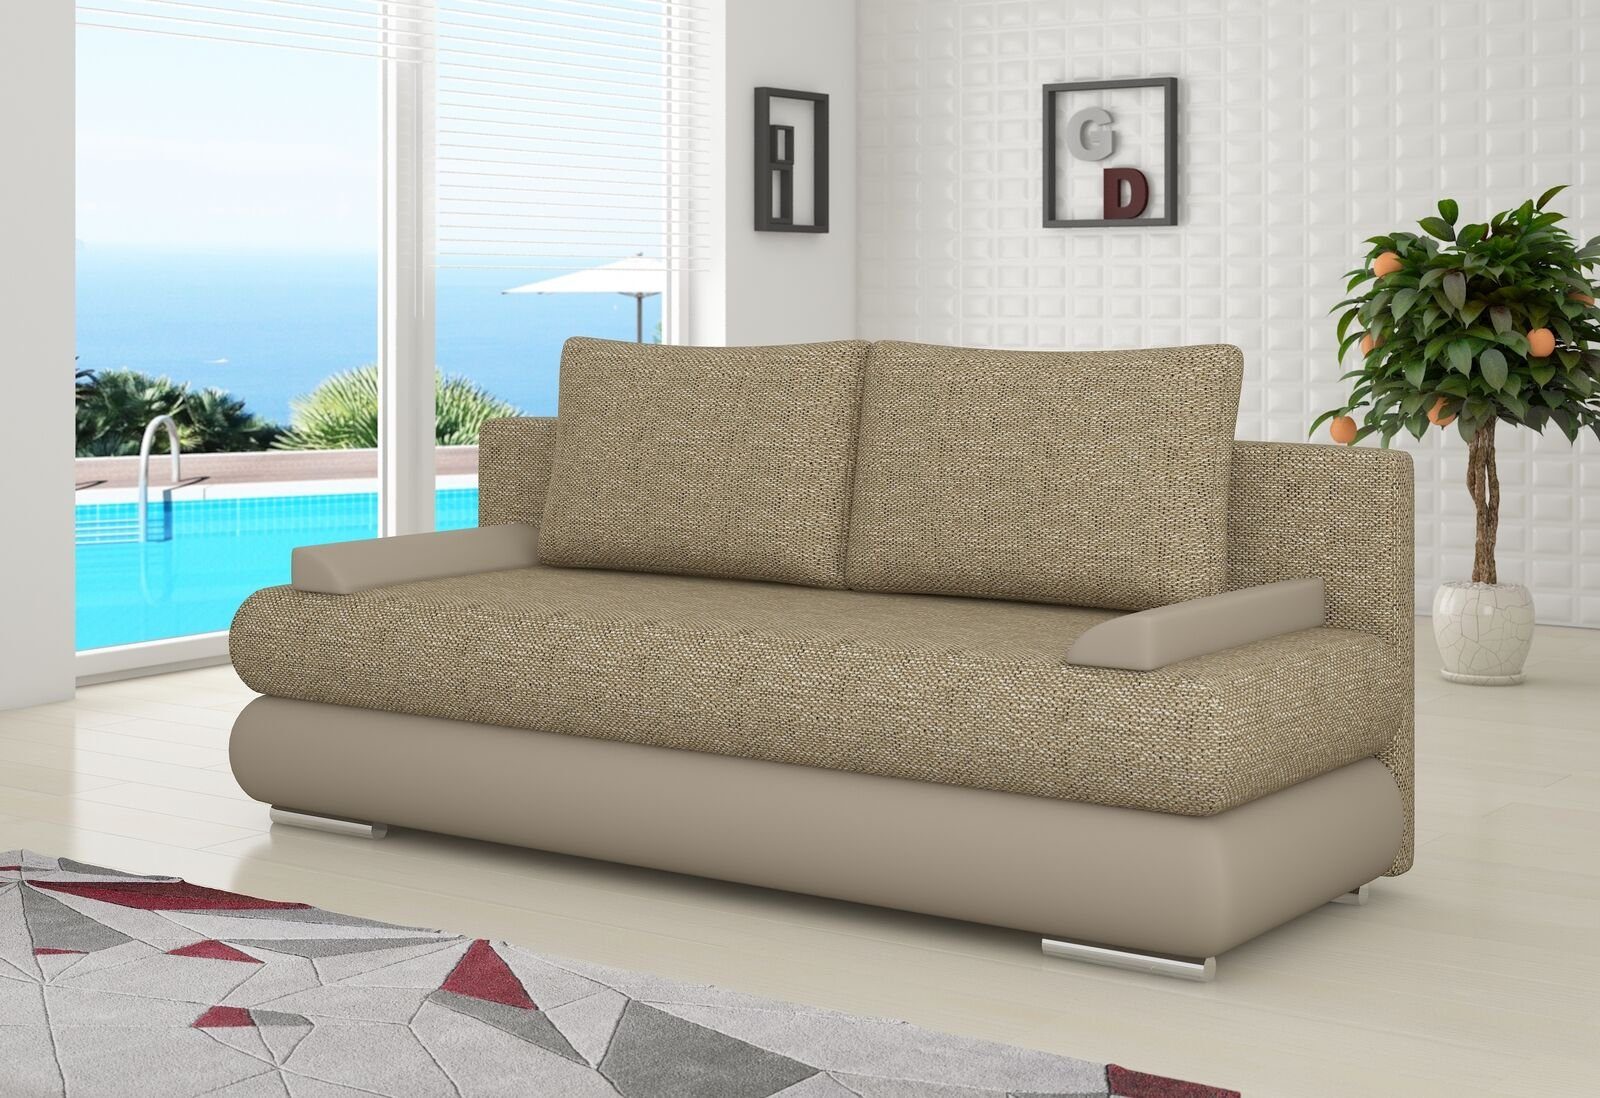 JVmoebel Sofa, Design Schlafsofa Couch Polster 3 Sitzer Stoff Couch Gästezimmer Beige | Alle Sofas